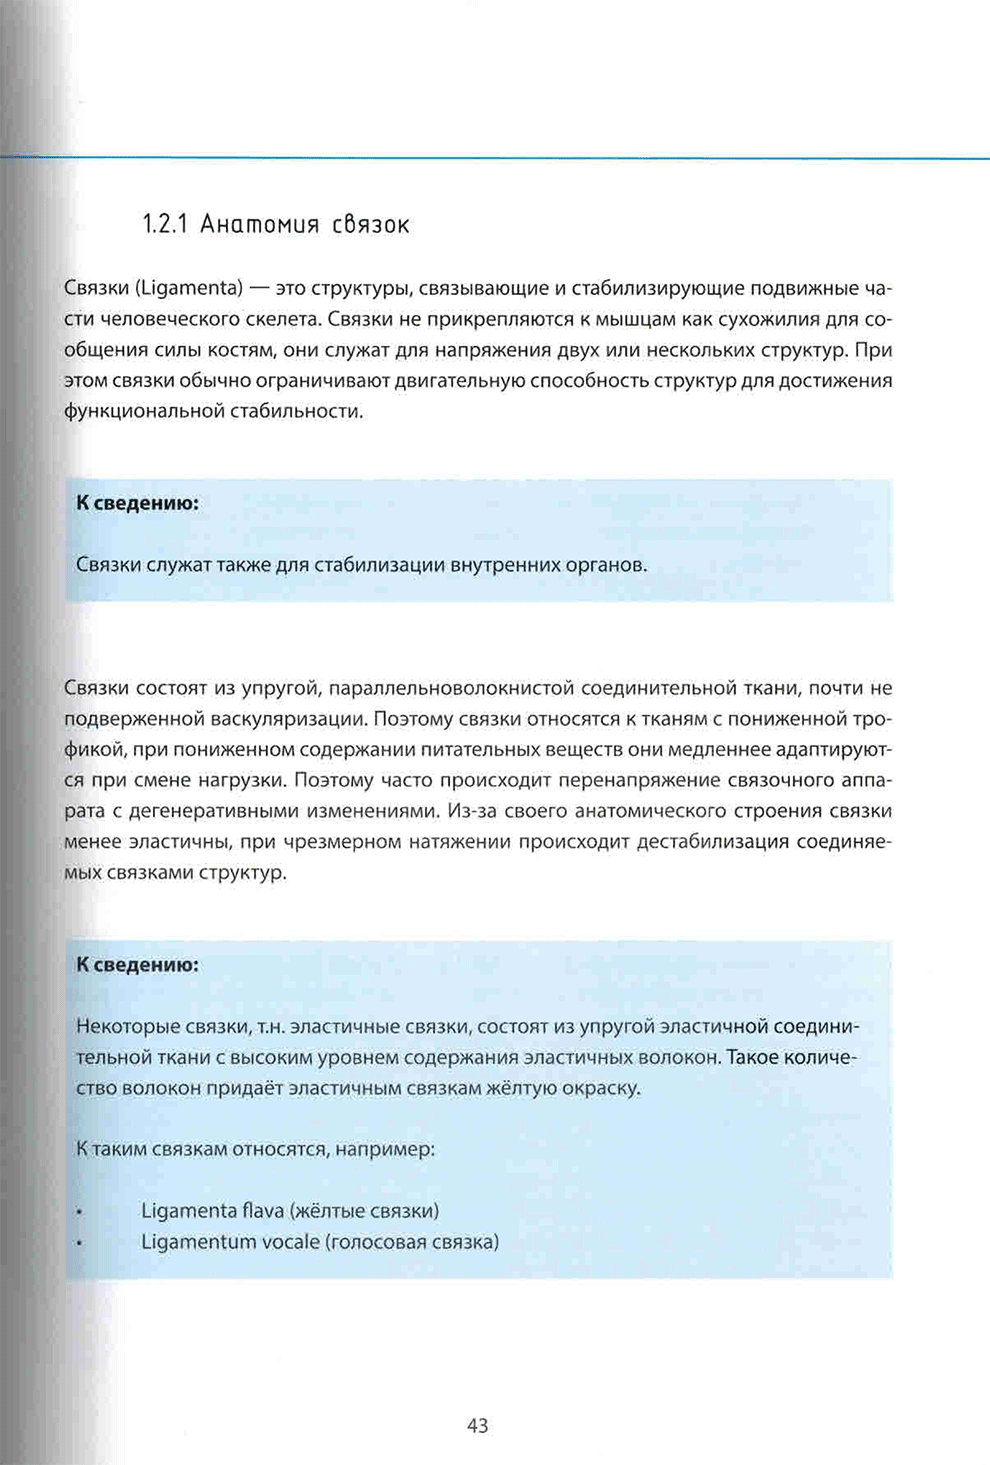 Пример страниц из книги "Понять стопу. Учебное пособие" - Йорг Хальфманн